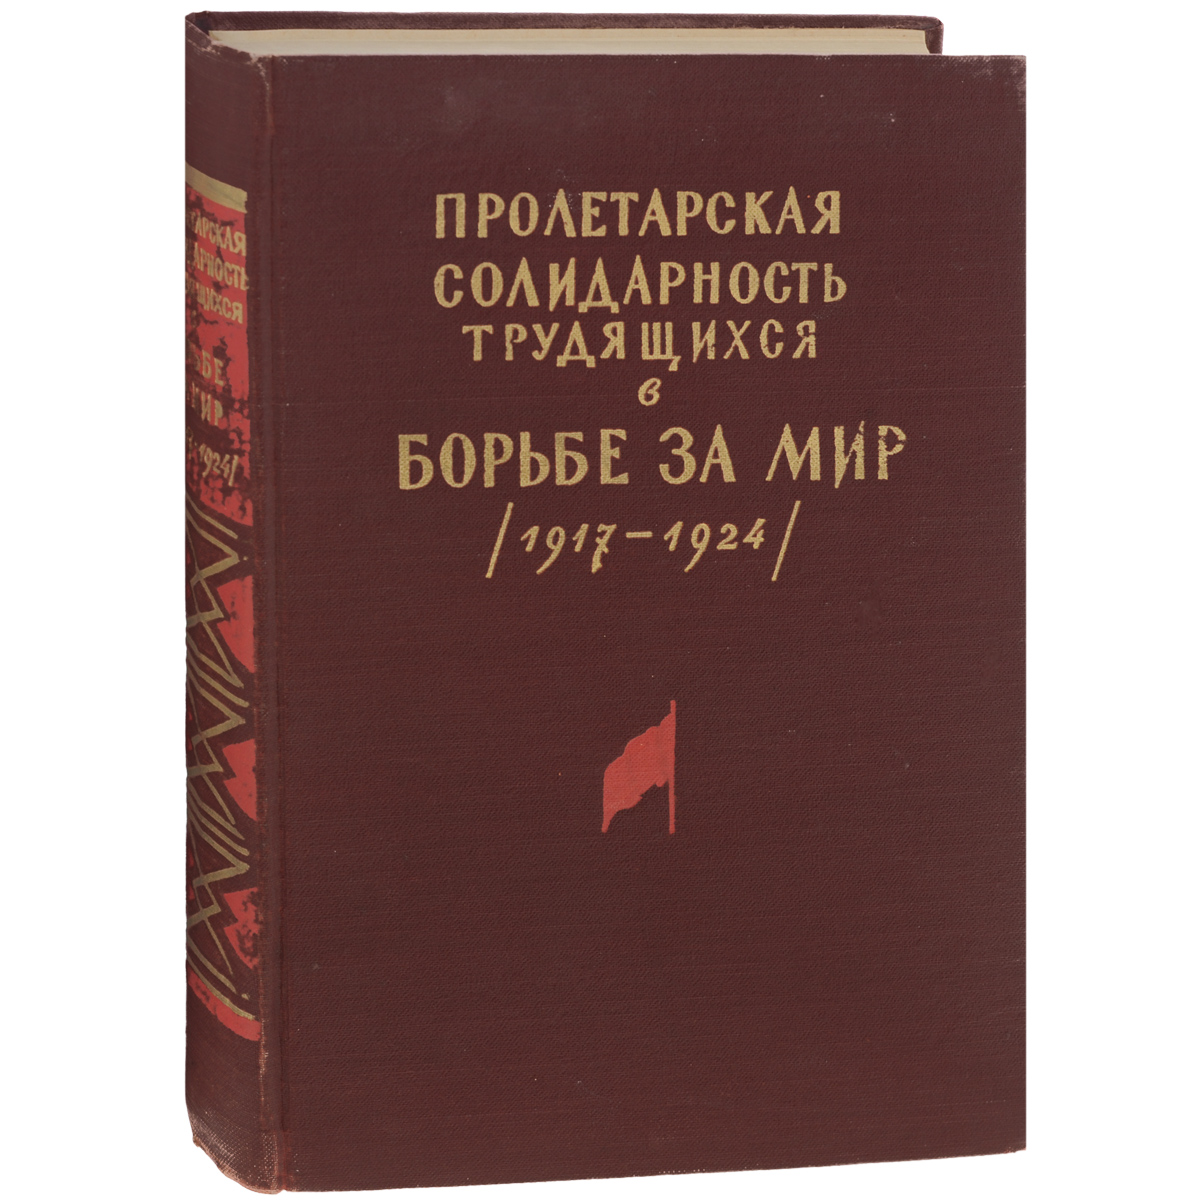 Пролетарская солидарность трудящихся в борьбе за мир (1917-1924)